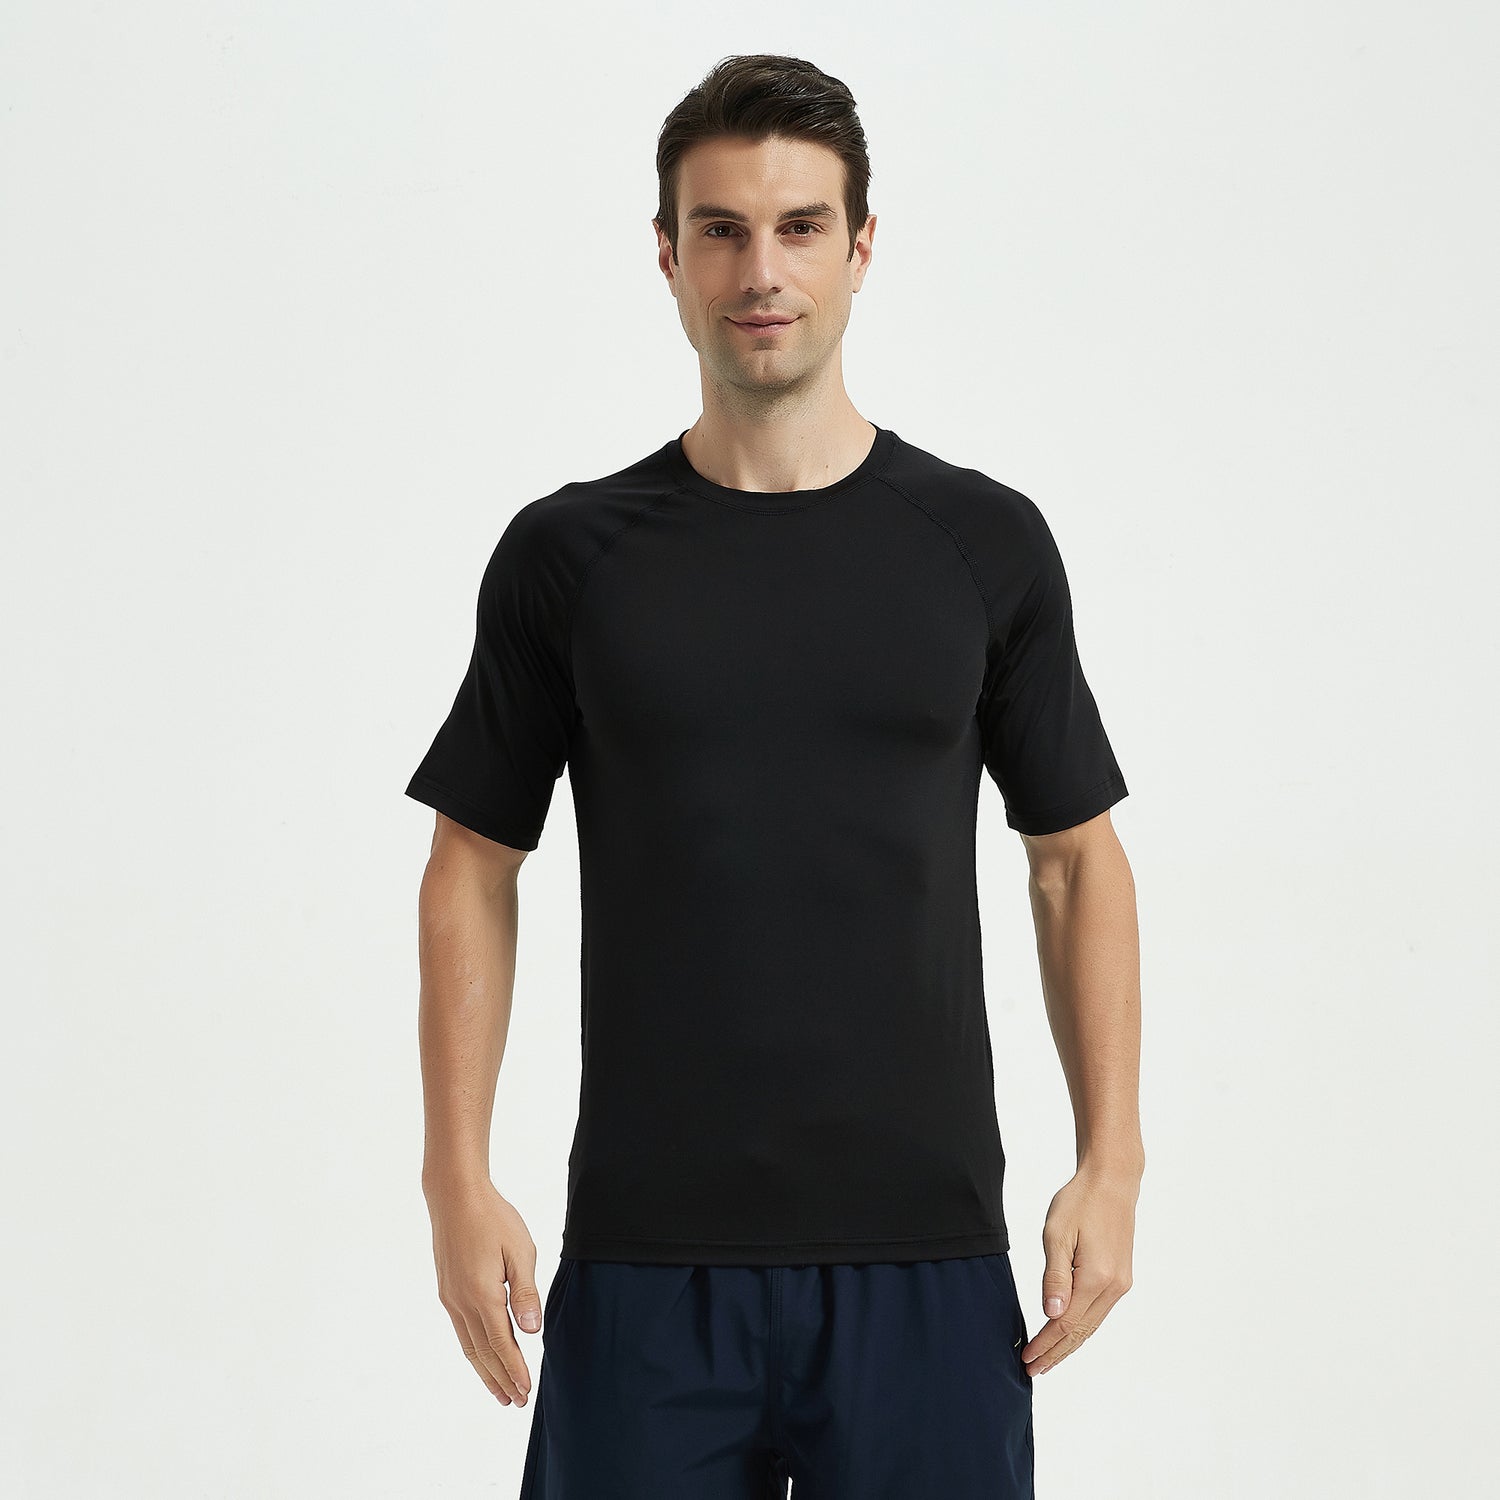 Men's T-shirts Weargraphene